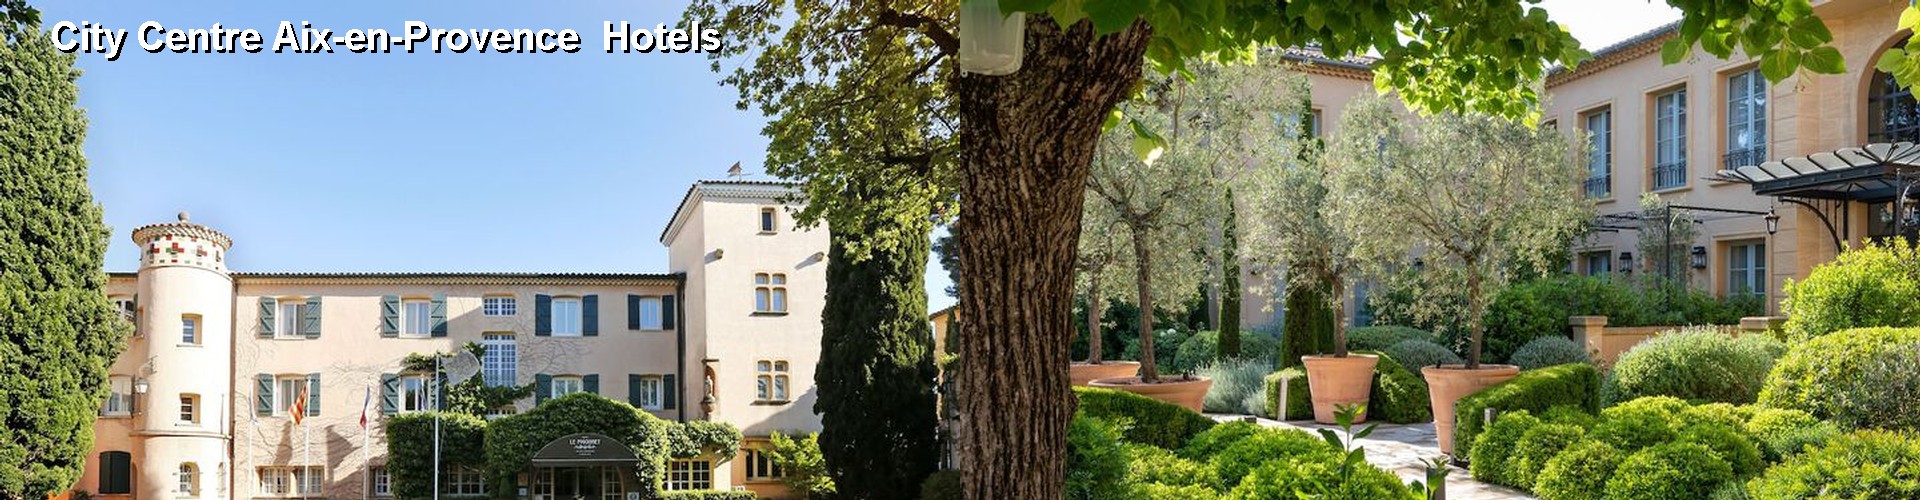 5 Best Hotels near City Centre Aix-en-Provence 